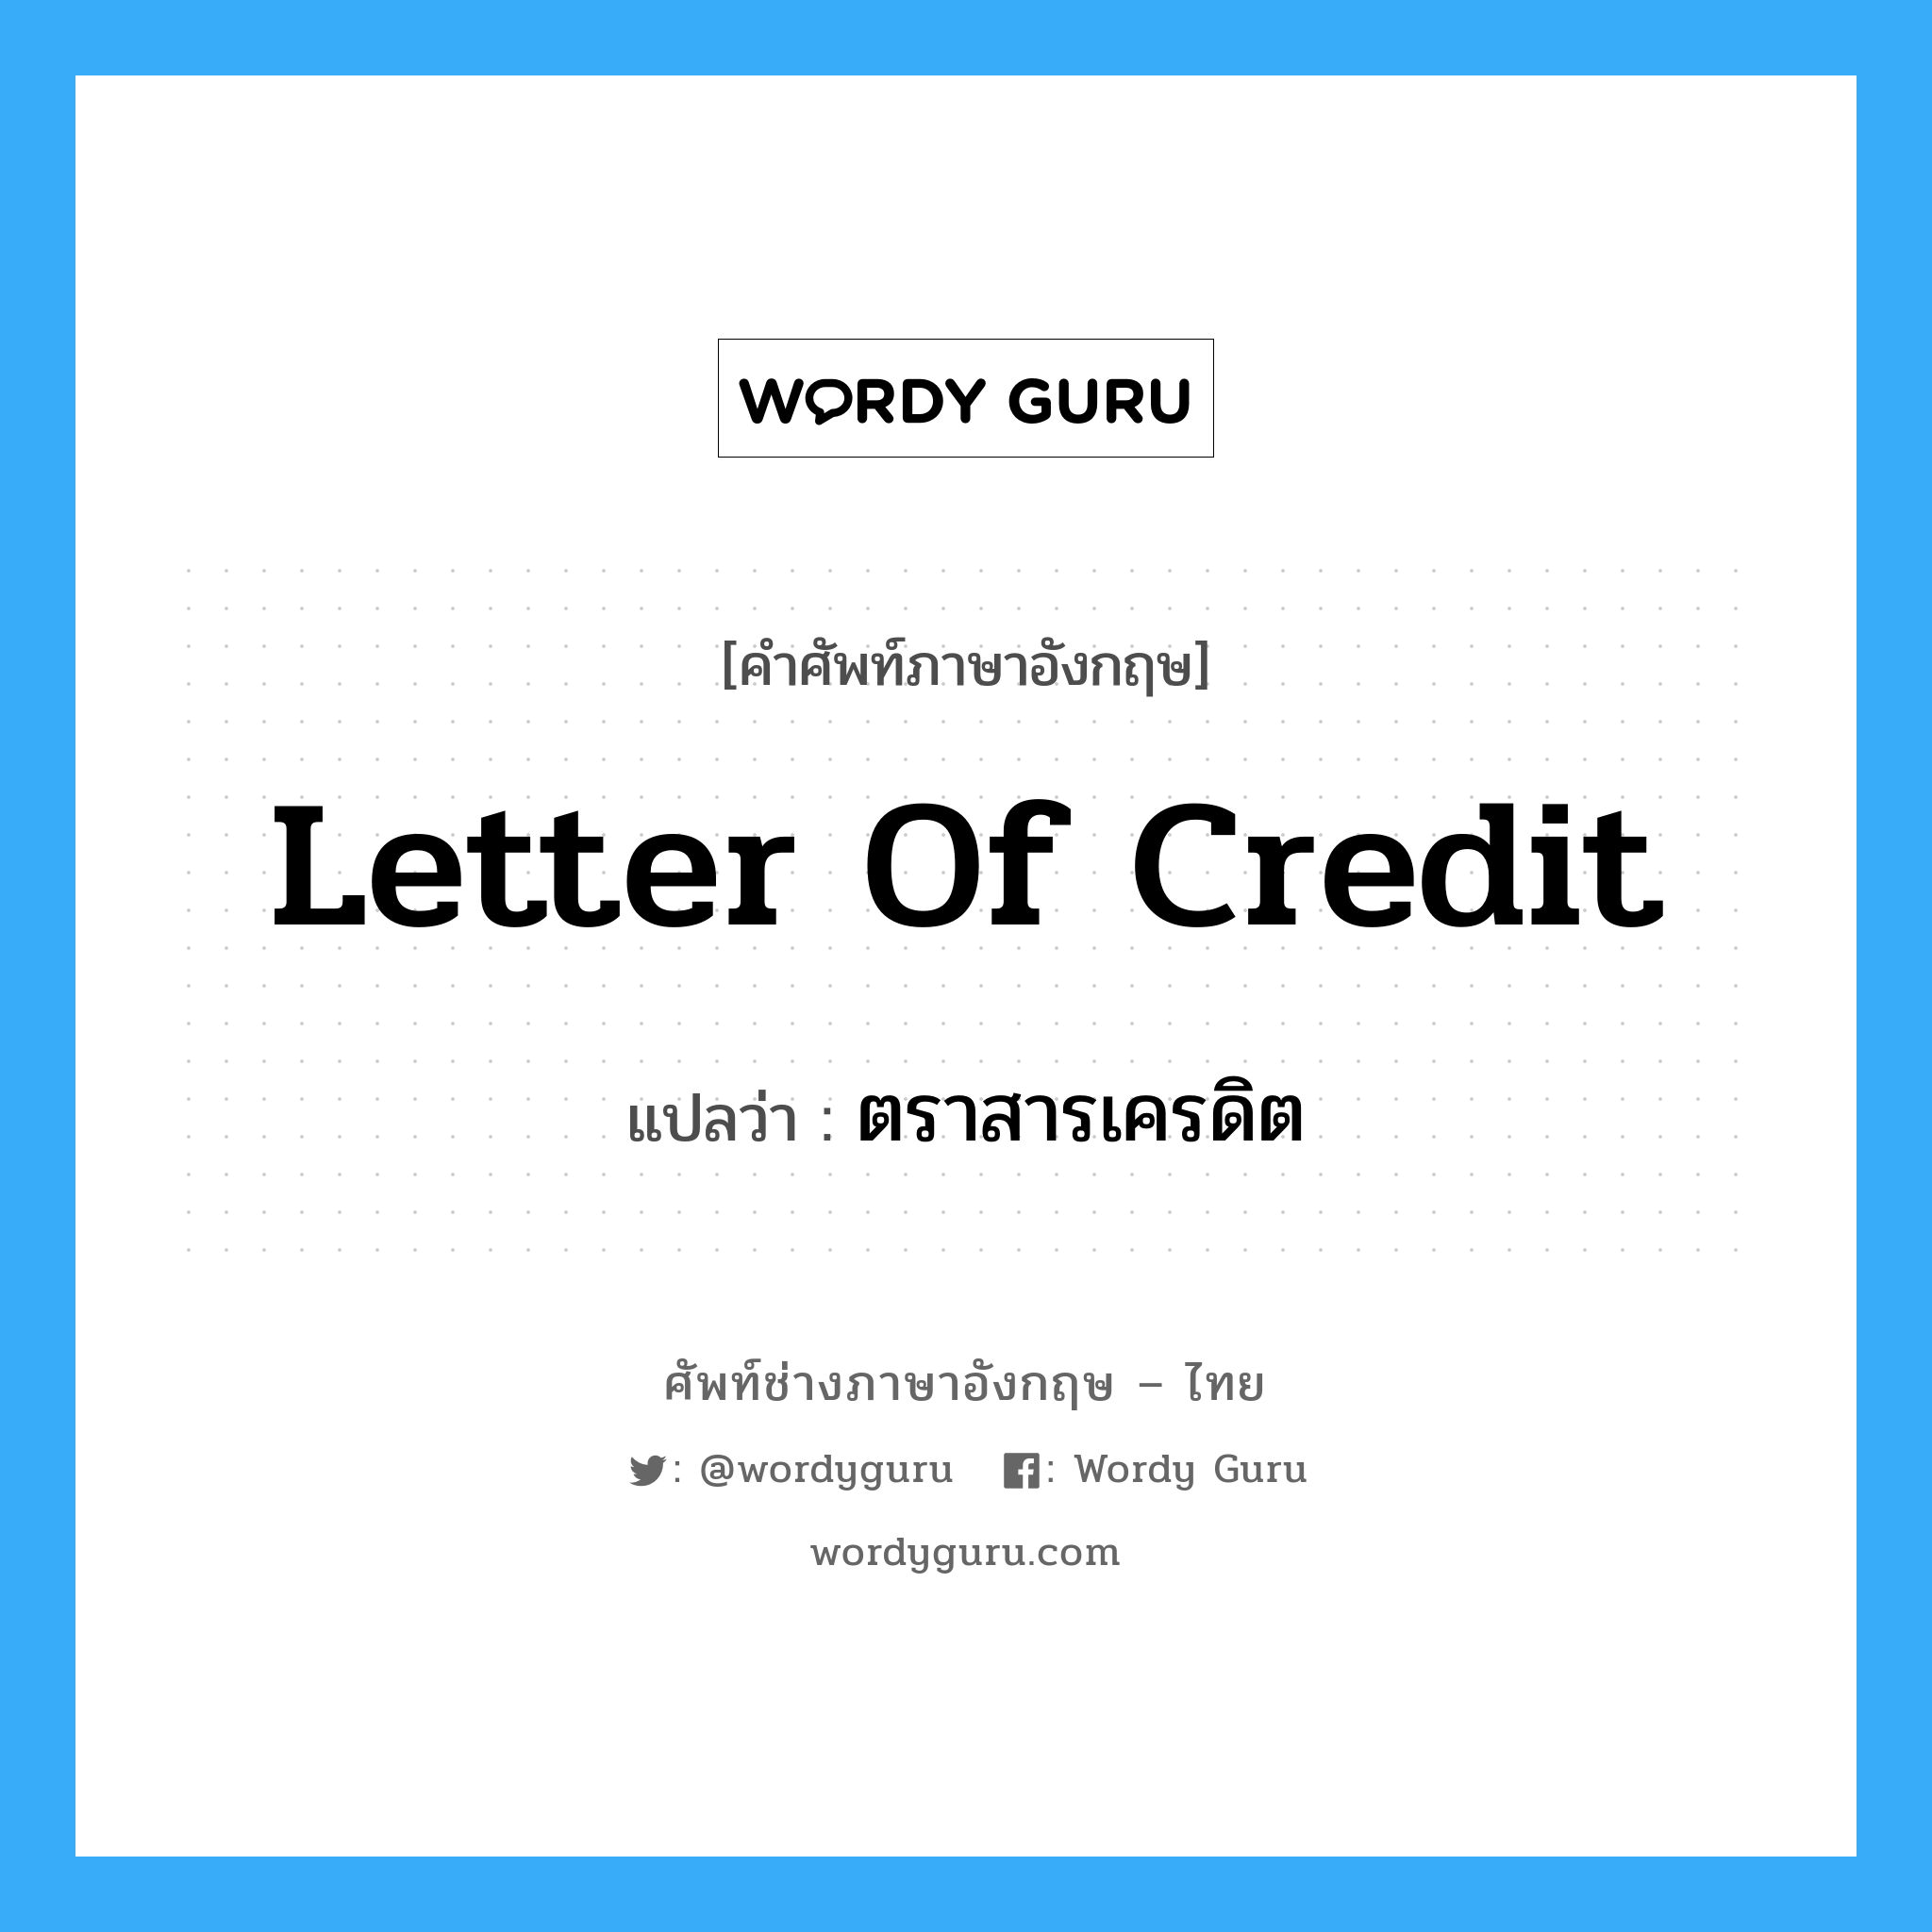 Letter of Credit แปลว่า?, คำศัพท์ช่างภาษาอังกฤษ - ไทย Letter of Credit คำศัพท์ภาษาอังกฤษ Letter of Credit แปลว่า ตราสารเครดิต